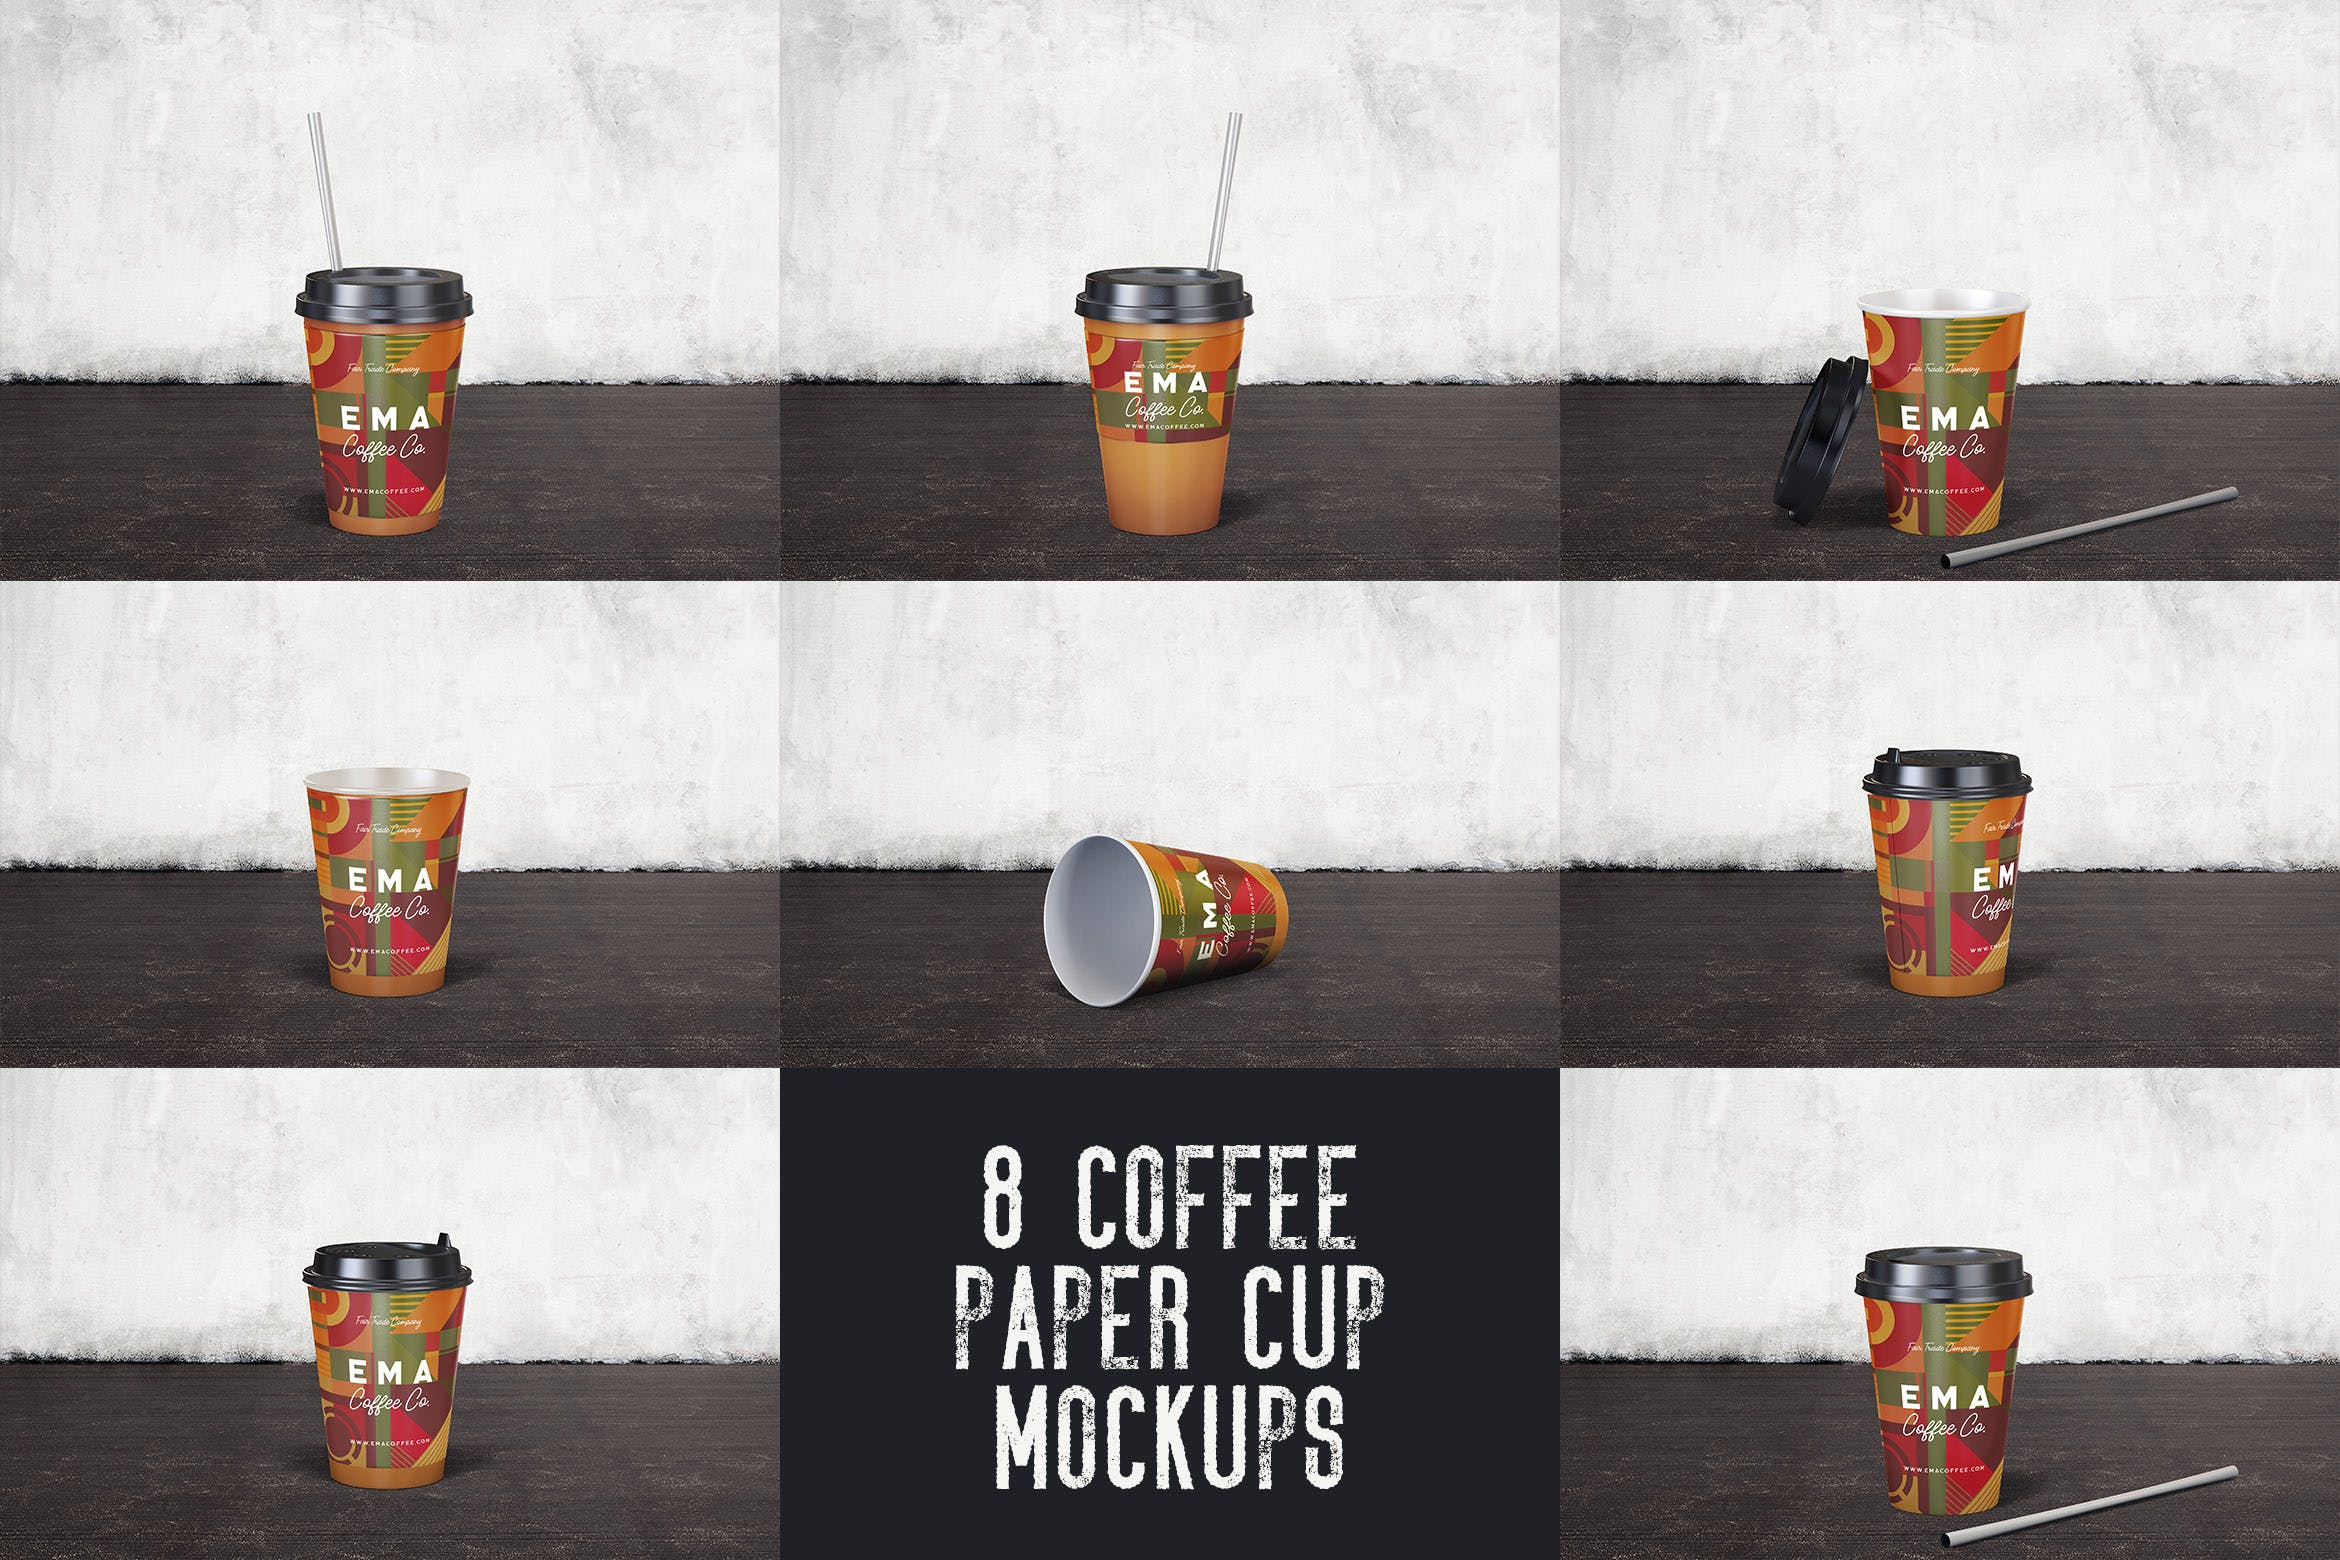 8个咖啡纸杯外观设计效果图第一素材精选 8 Coffee Paper Cup Mockups插图